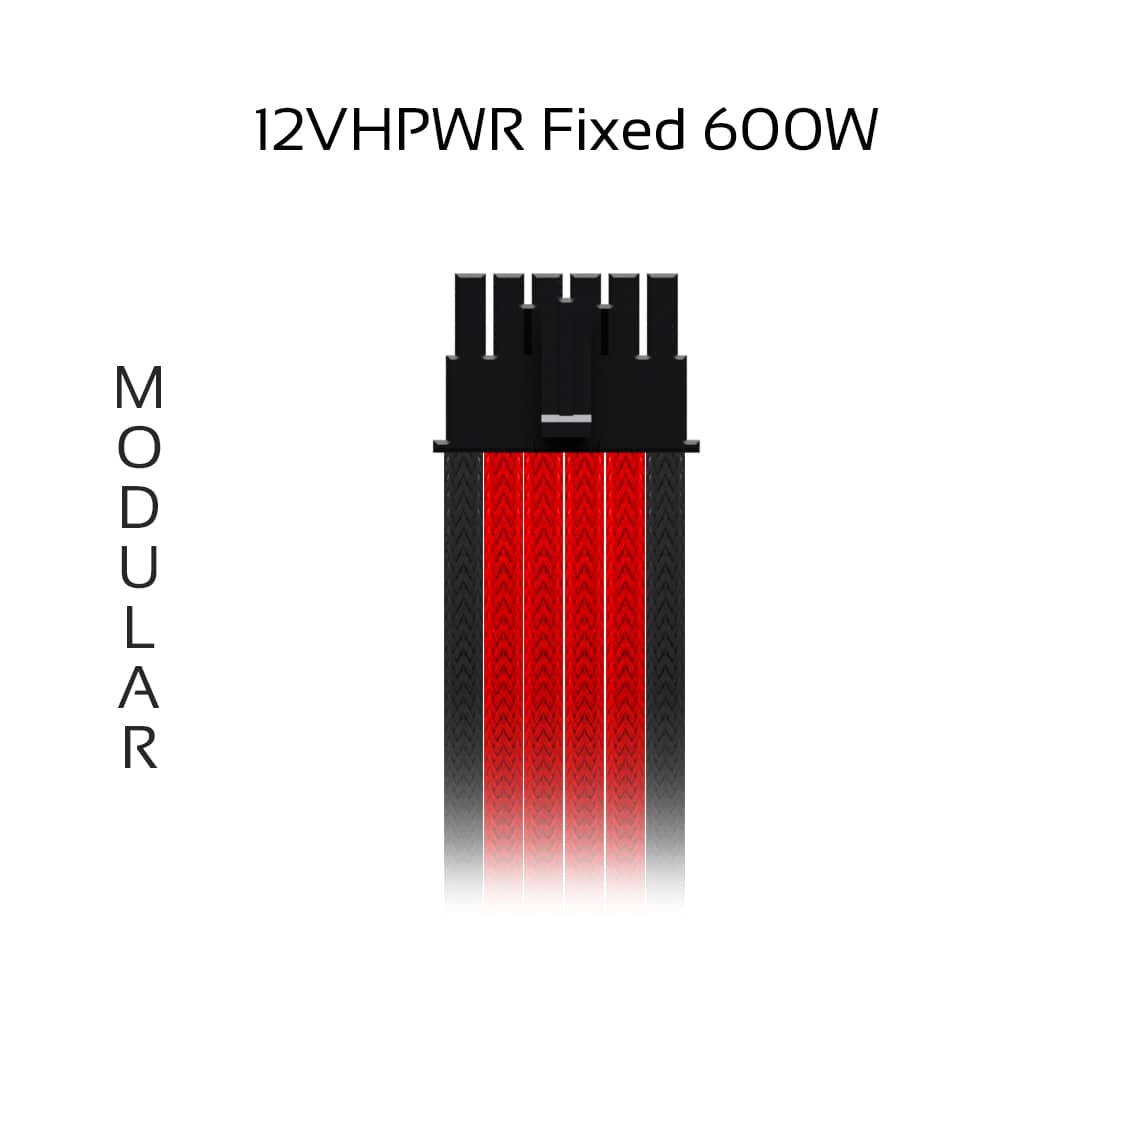 12vhpwr-fixed-modular